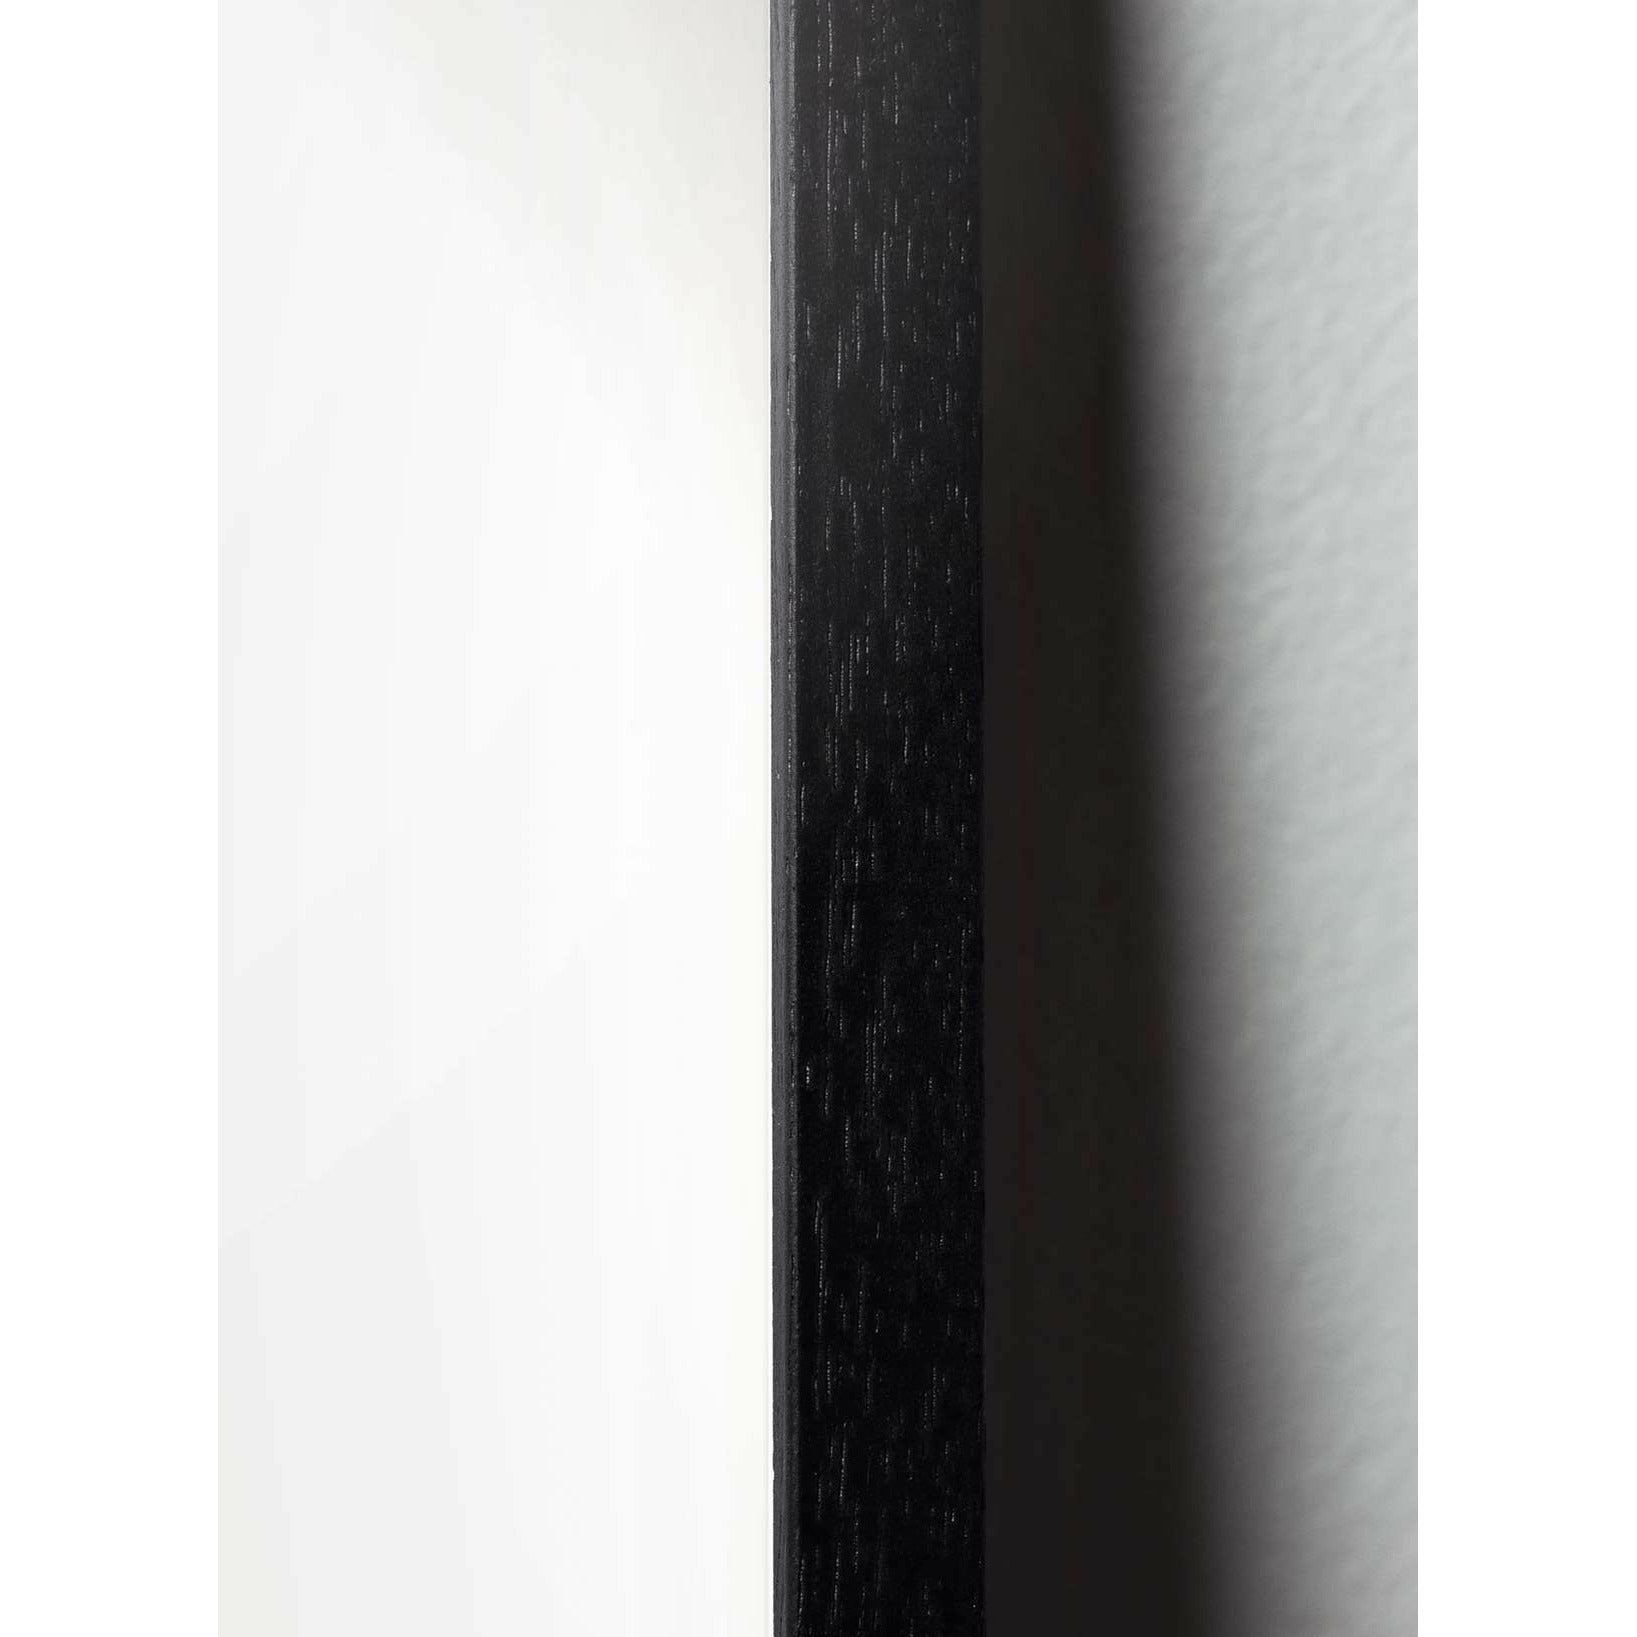 Plakát křížového formátu vajec z mozku, rám v černém lakovaném dřevu A5, černé